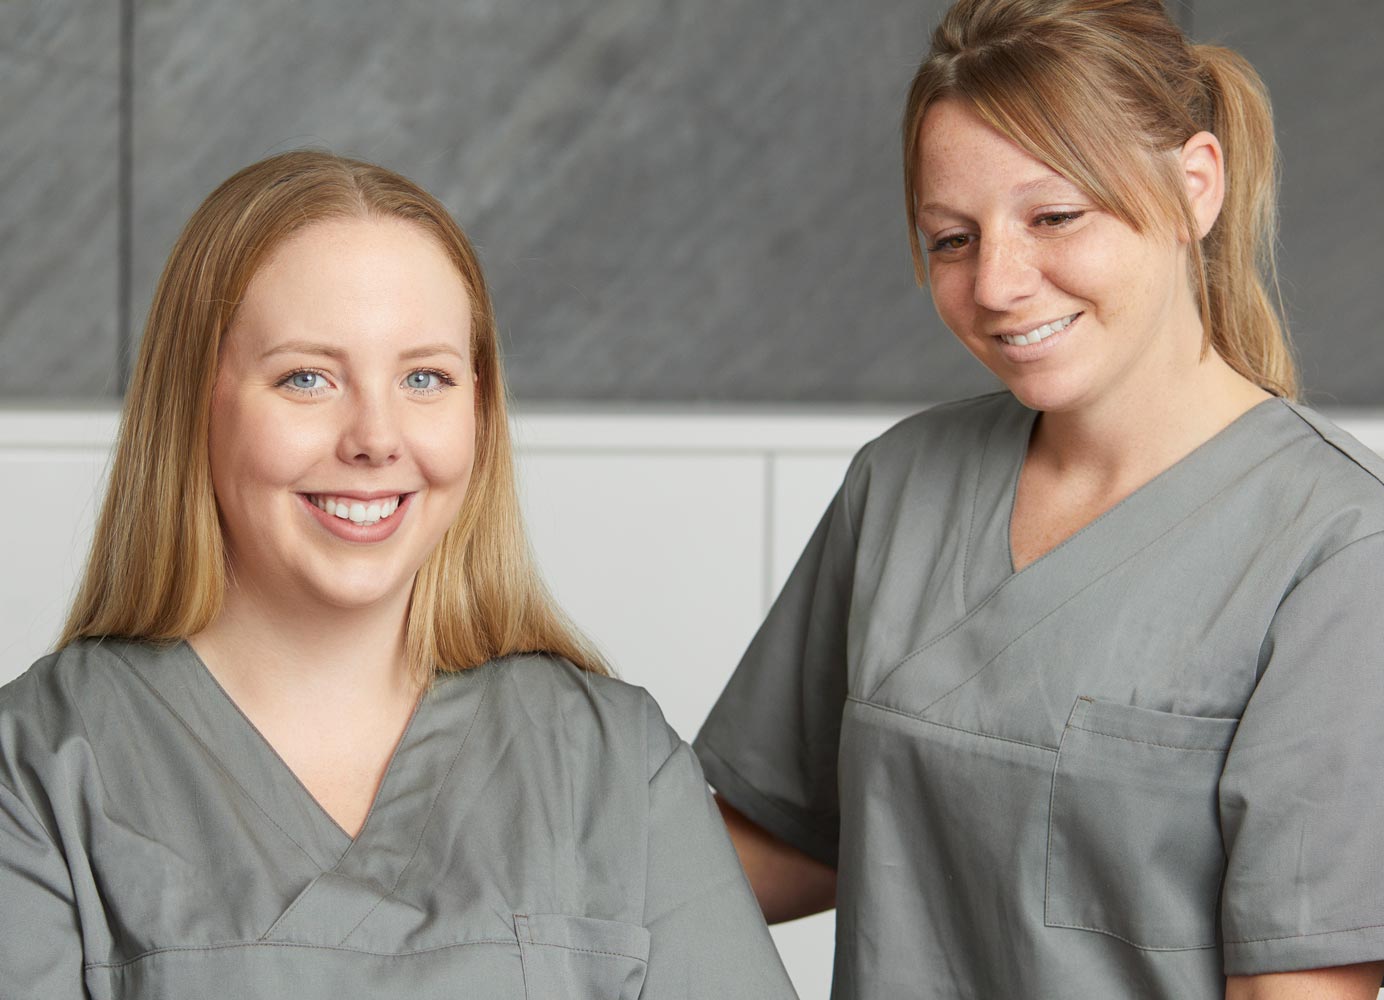 Zwei zahnmedizinische Fachangestellte in grauer Kleidung